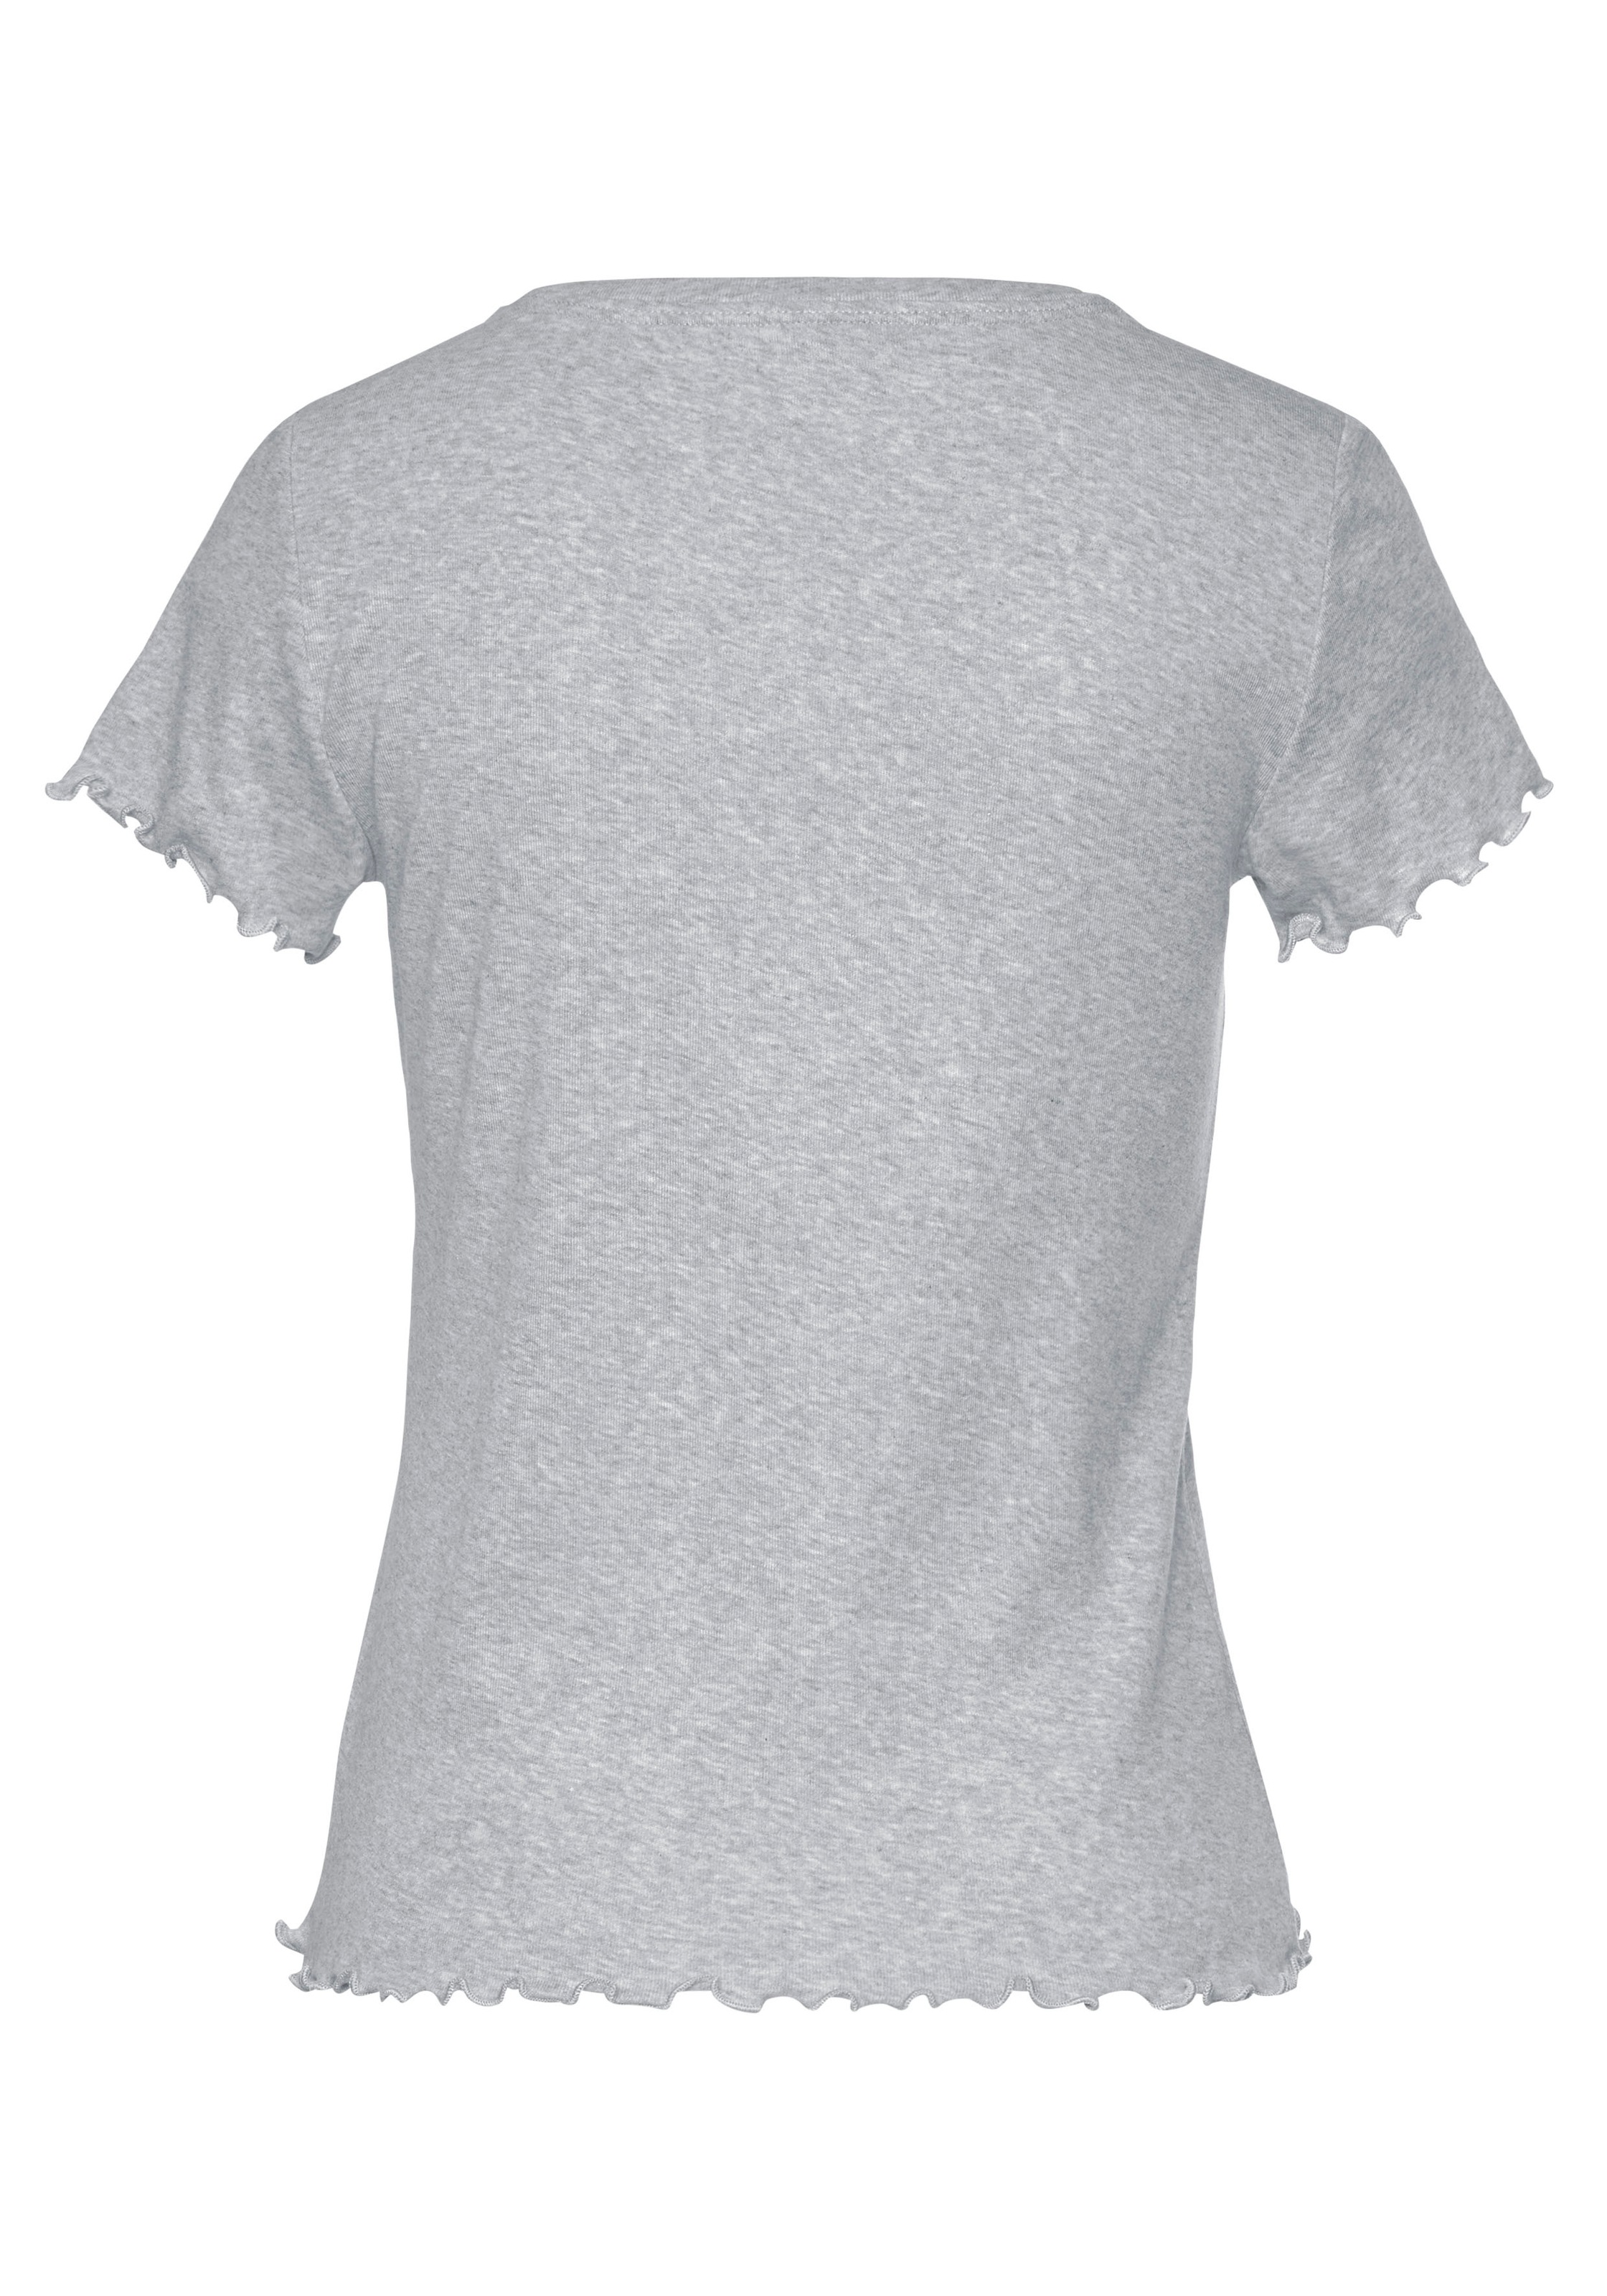 Kräuselsaum s.Oliver im mit T-Shirt, Online-Shop kaufen